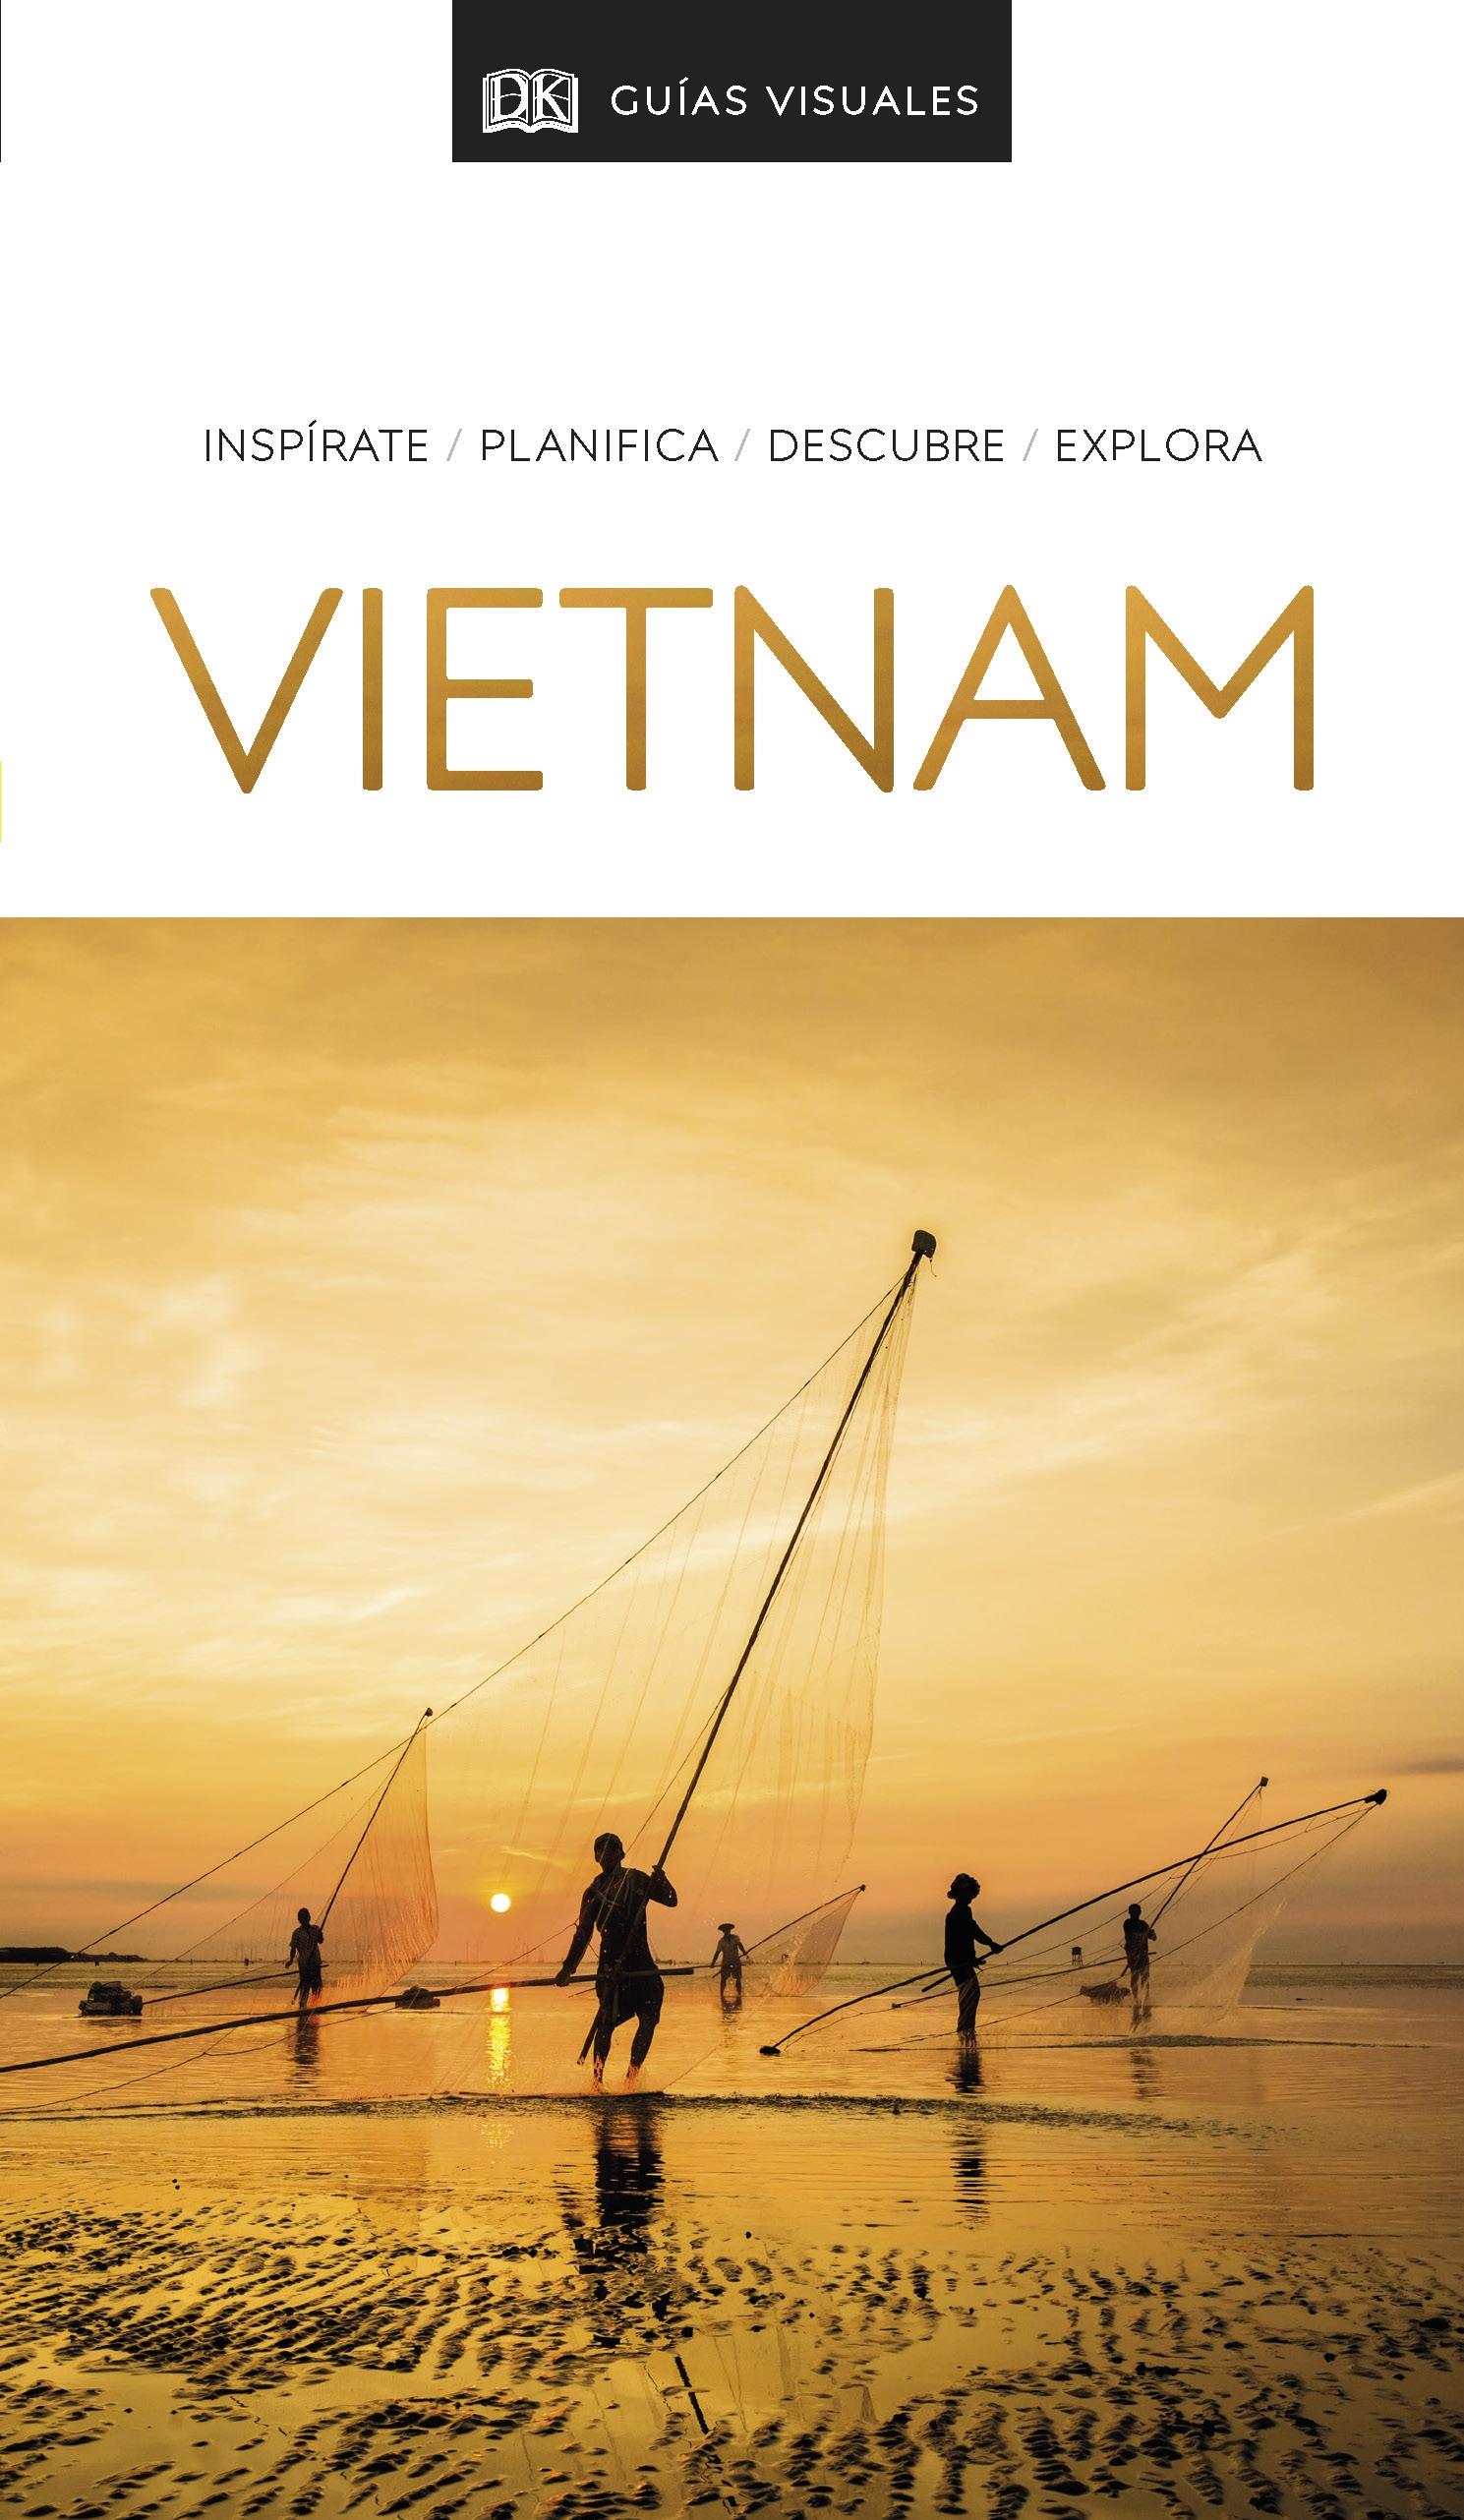 Guia Visual Vietnam 2020